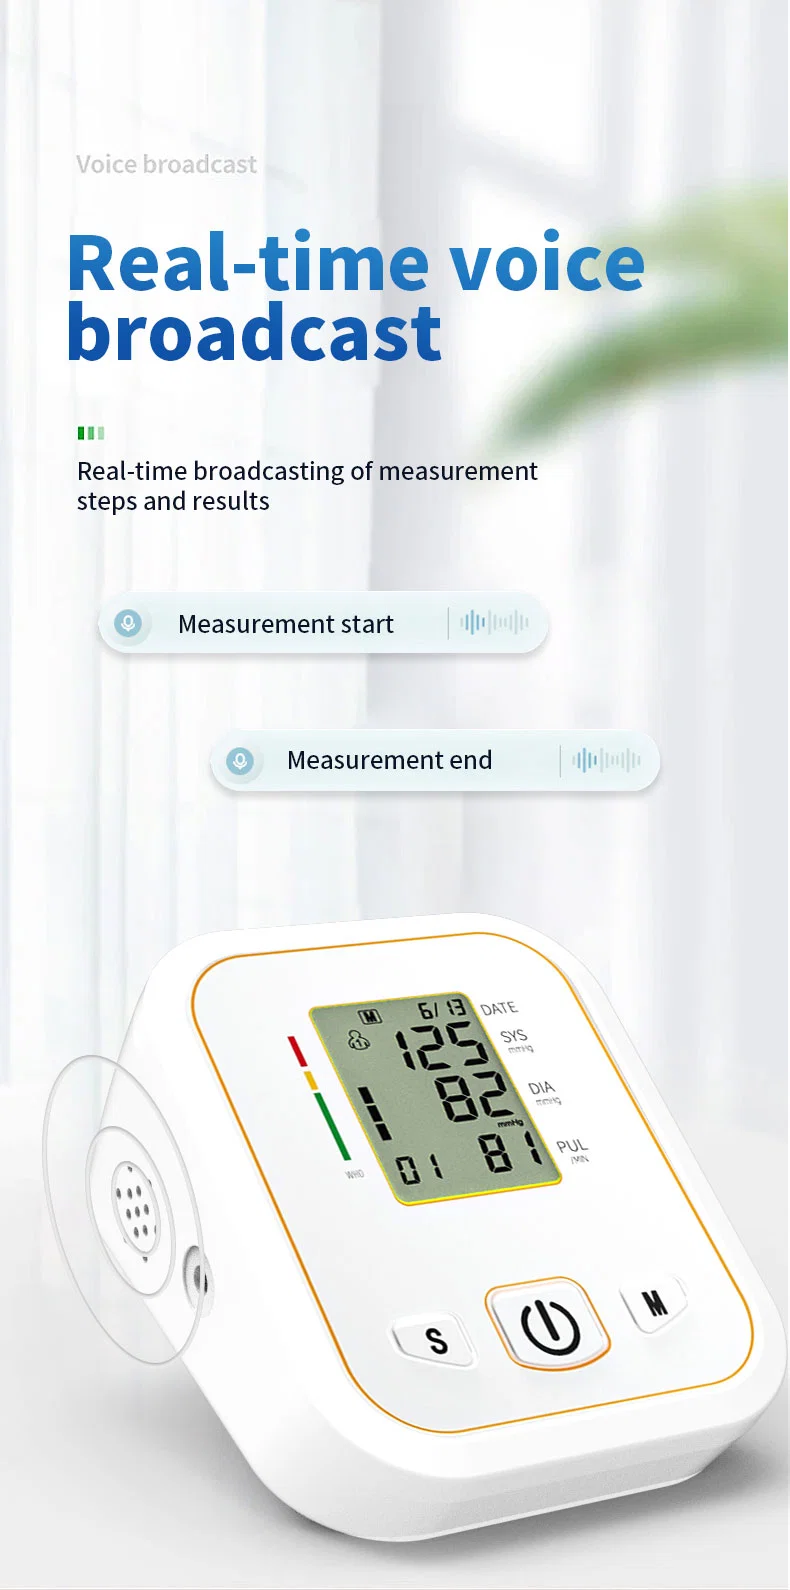 Buy Best Price Electronic Upper Arm Bp Meter Digital Blood Pressure Monitor